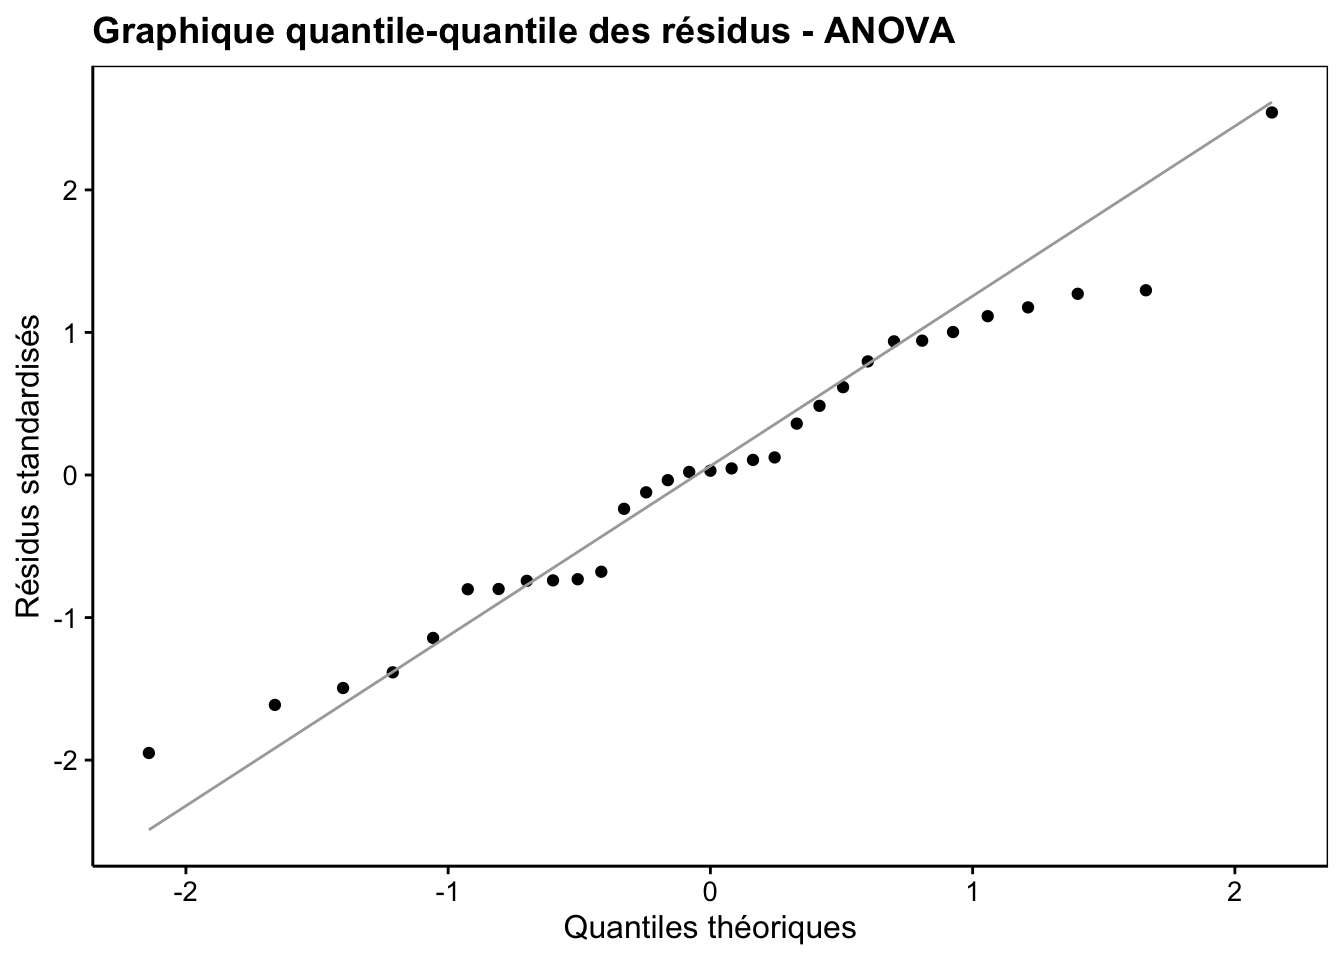 Graphique quantile-quantile appliqué aux résidus d'une ANOVA pour déterminer si leur distribution se rapproche d'un loi normale.